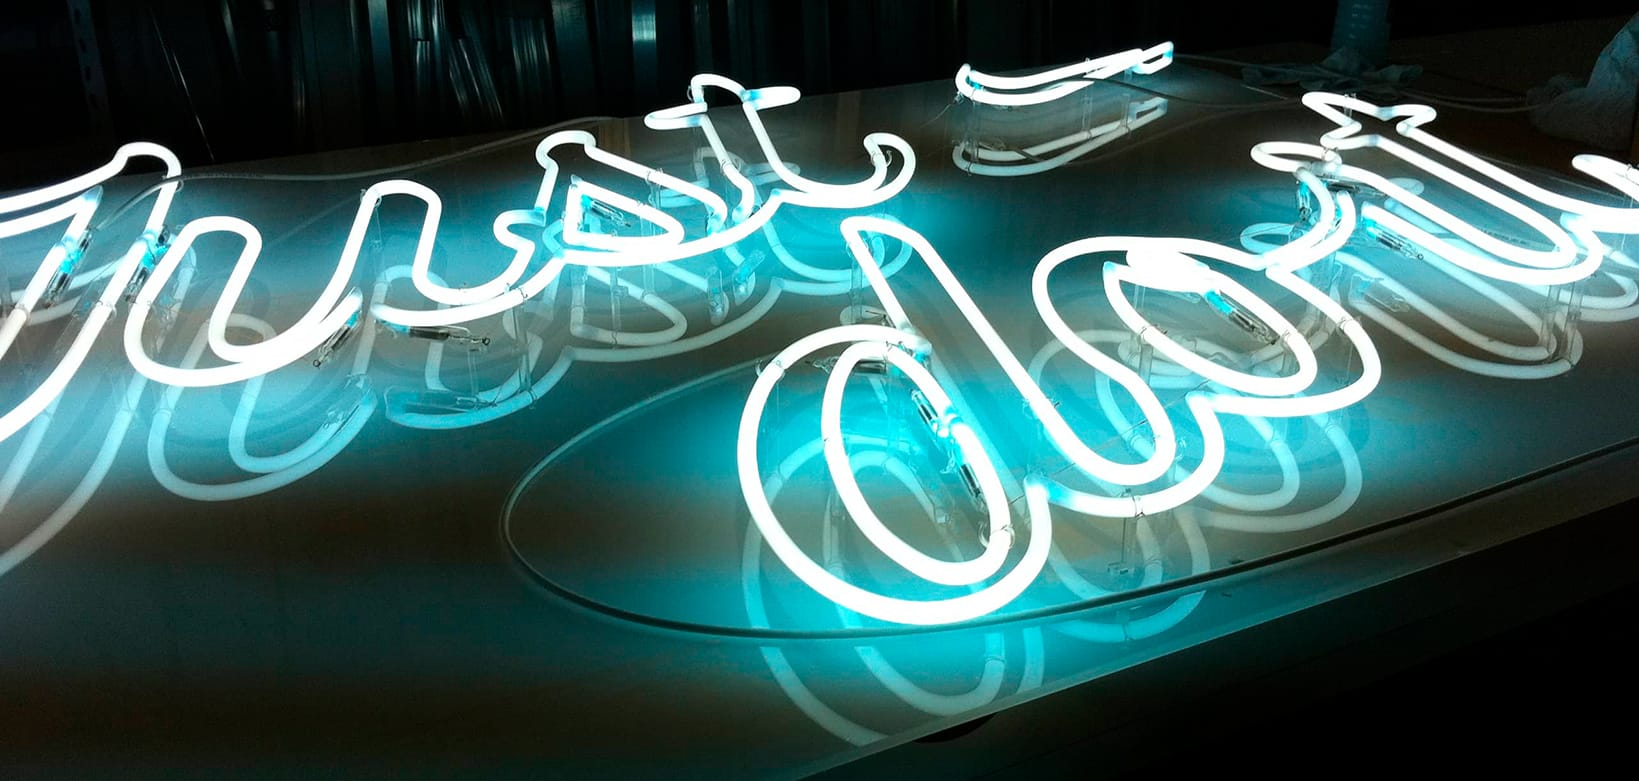 Rótulo luminoso neon para tienda de las marca Nike en Madrid mejora la comunicación visual